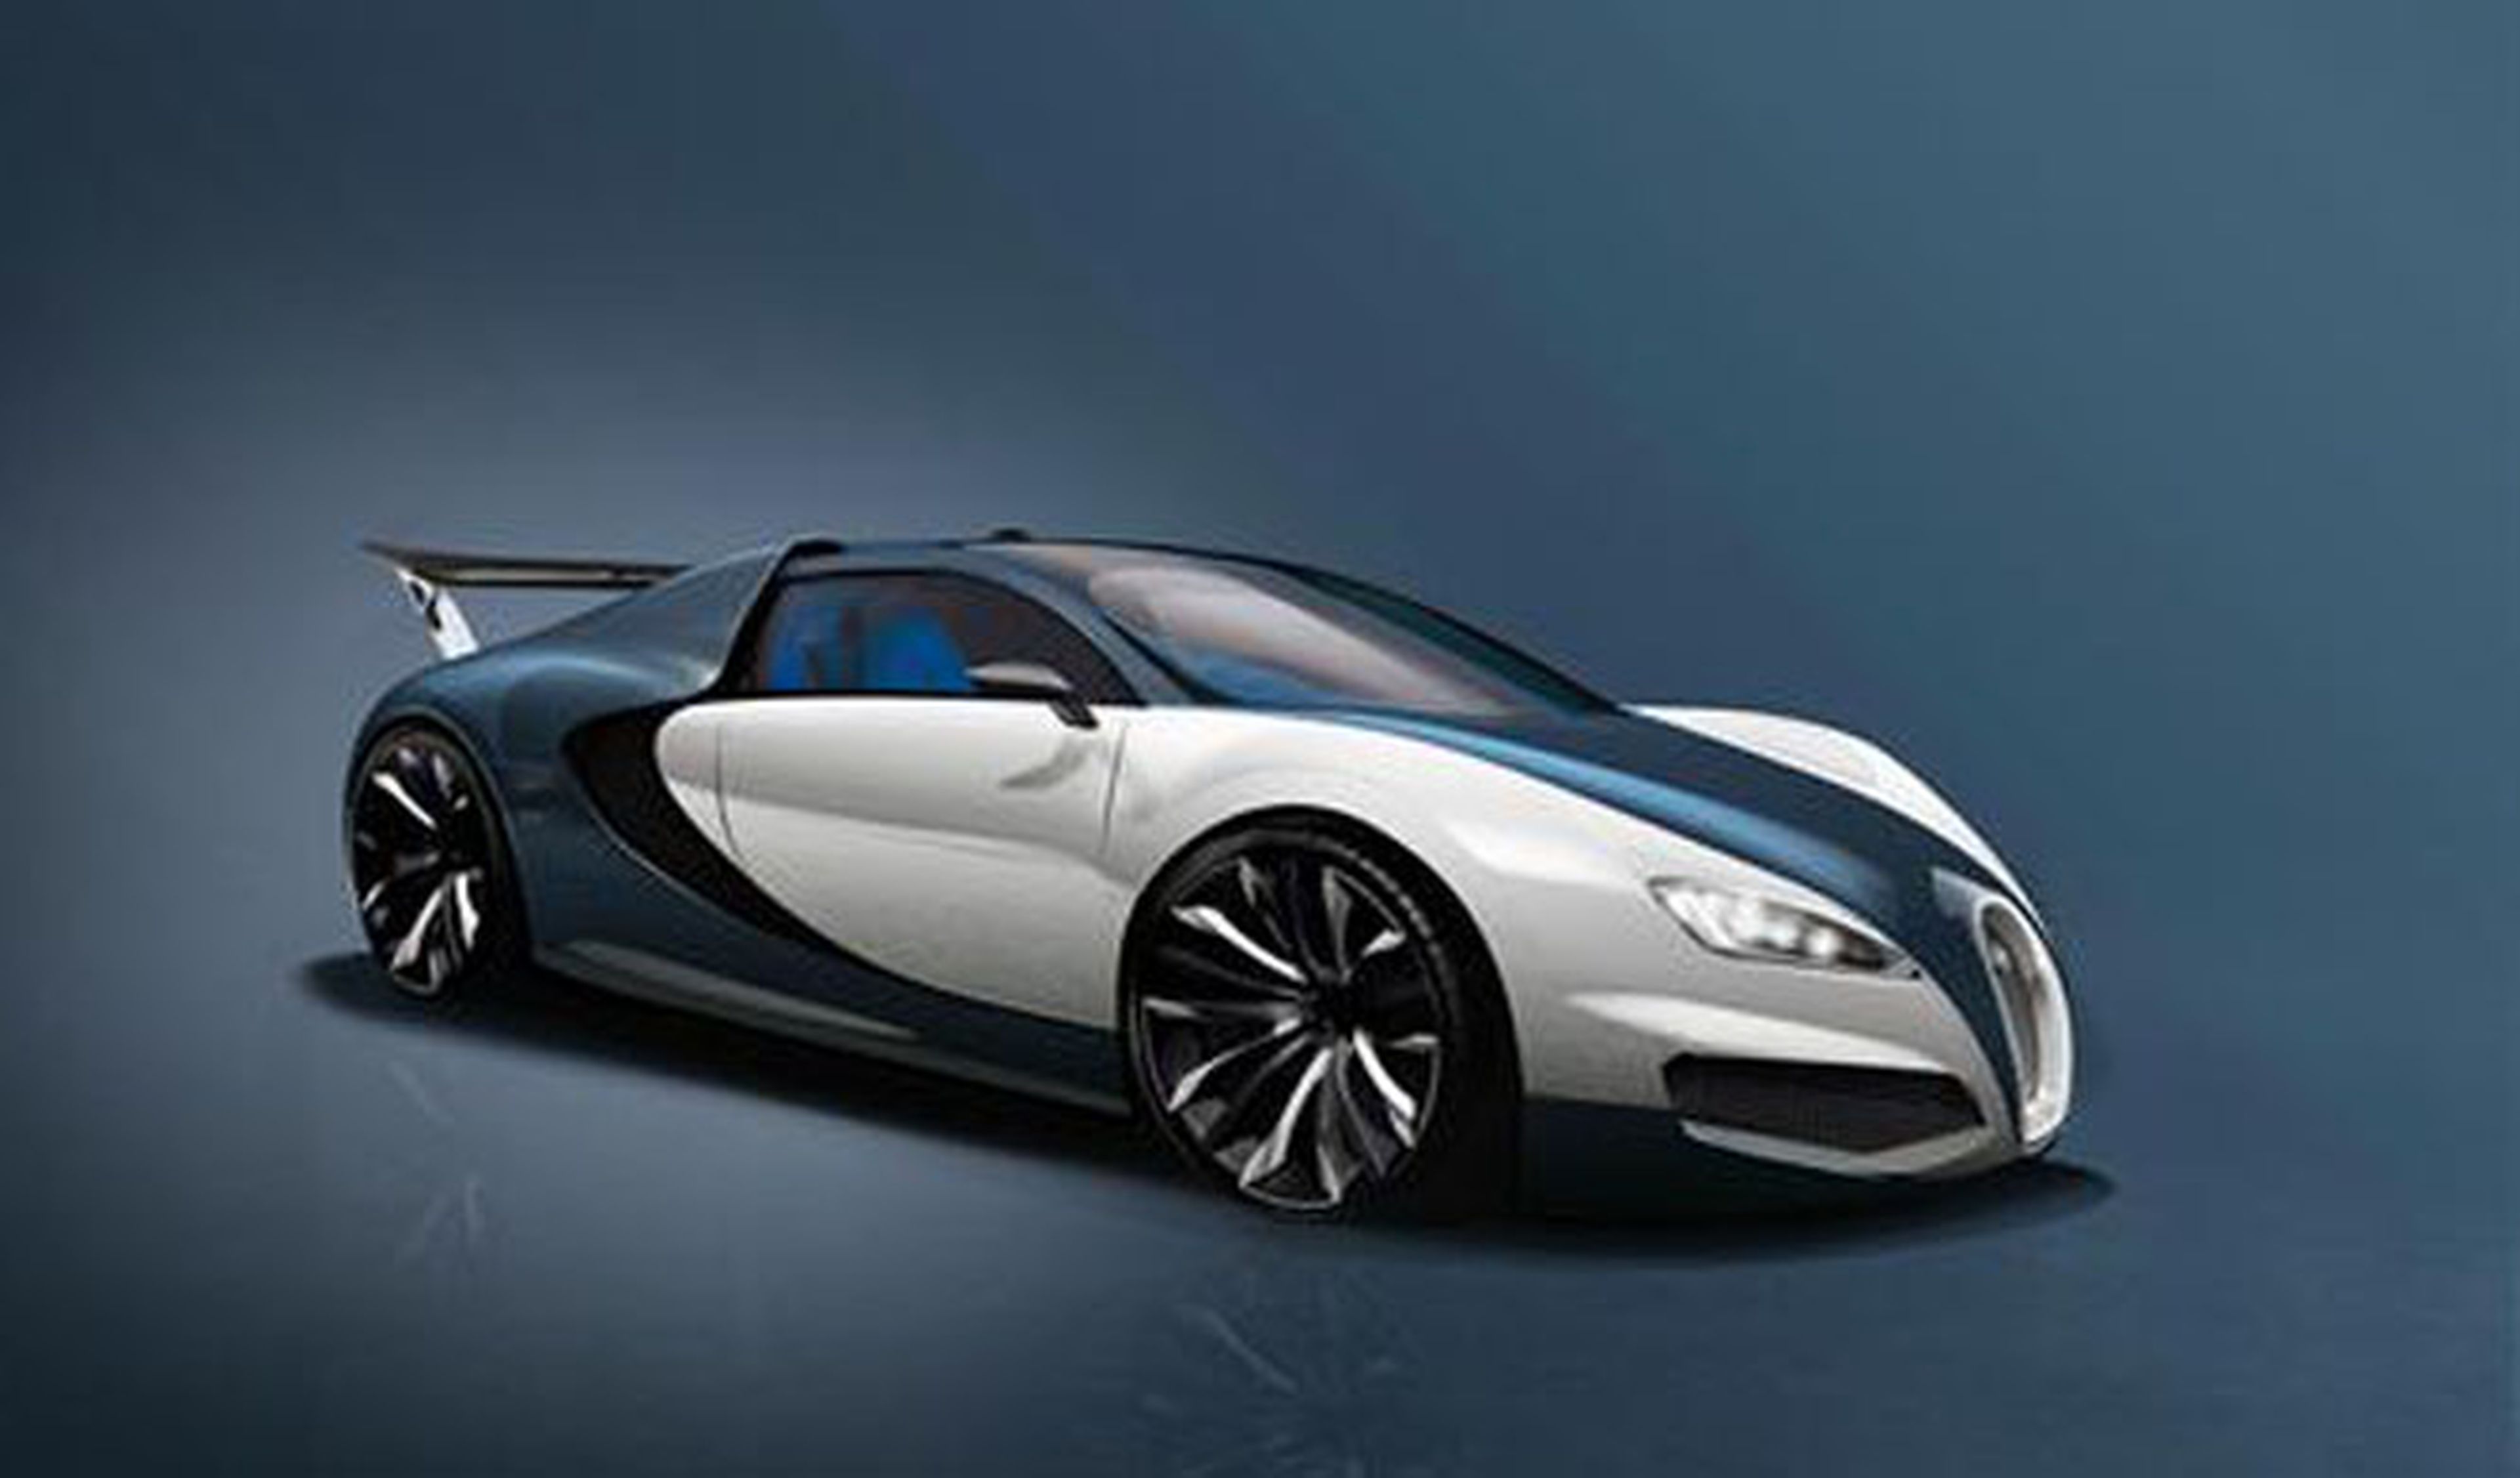 Sucesor del Veyron: demasiado rápido para probarse a fondo